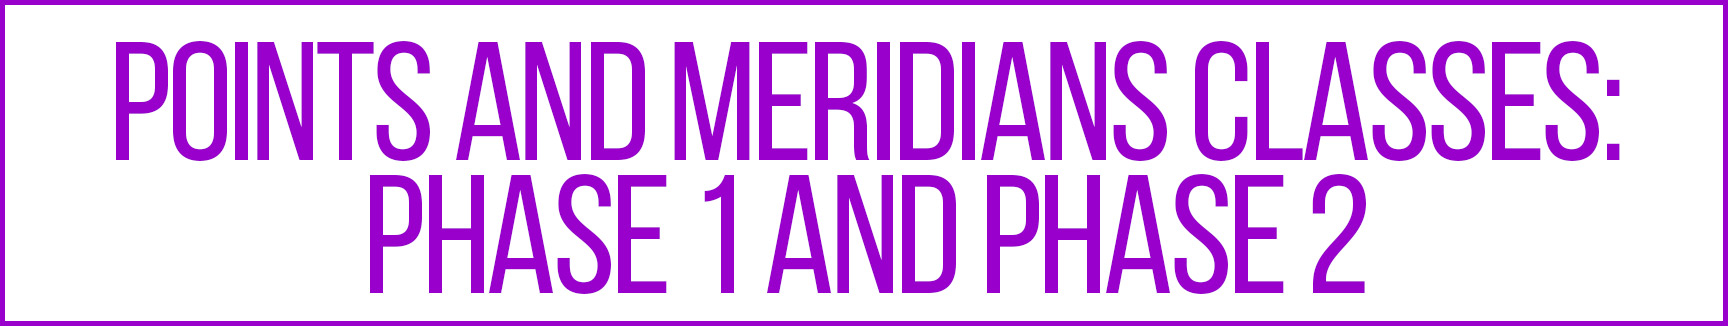 Meridians Points Class